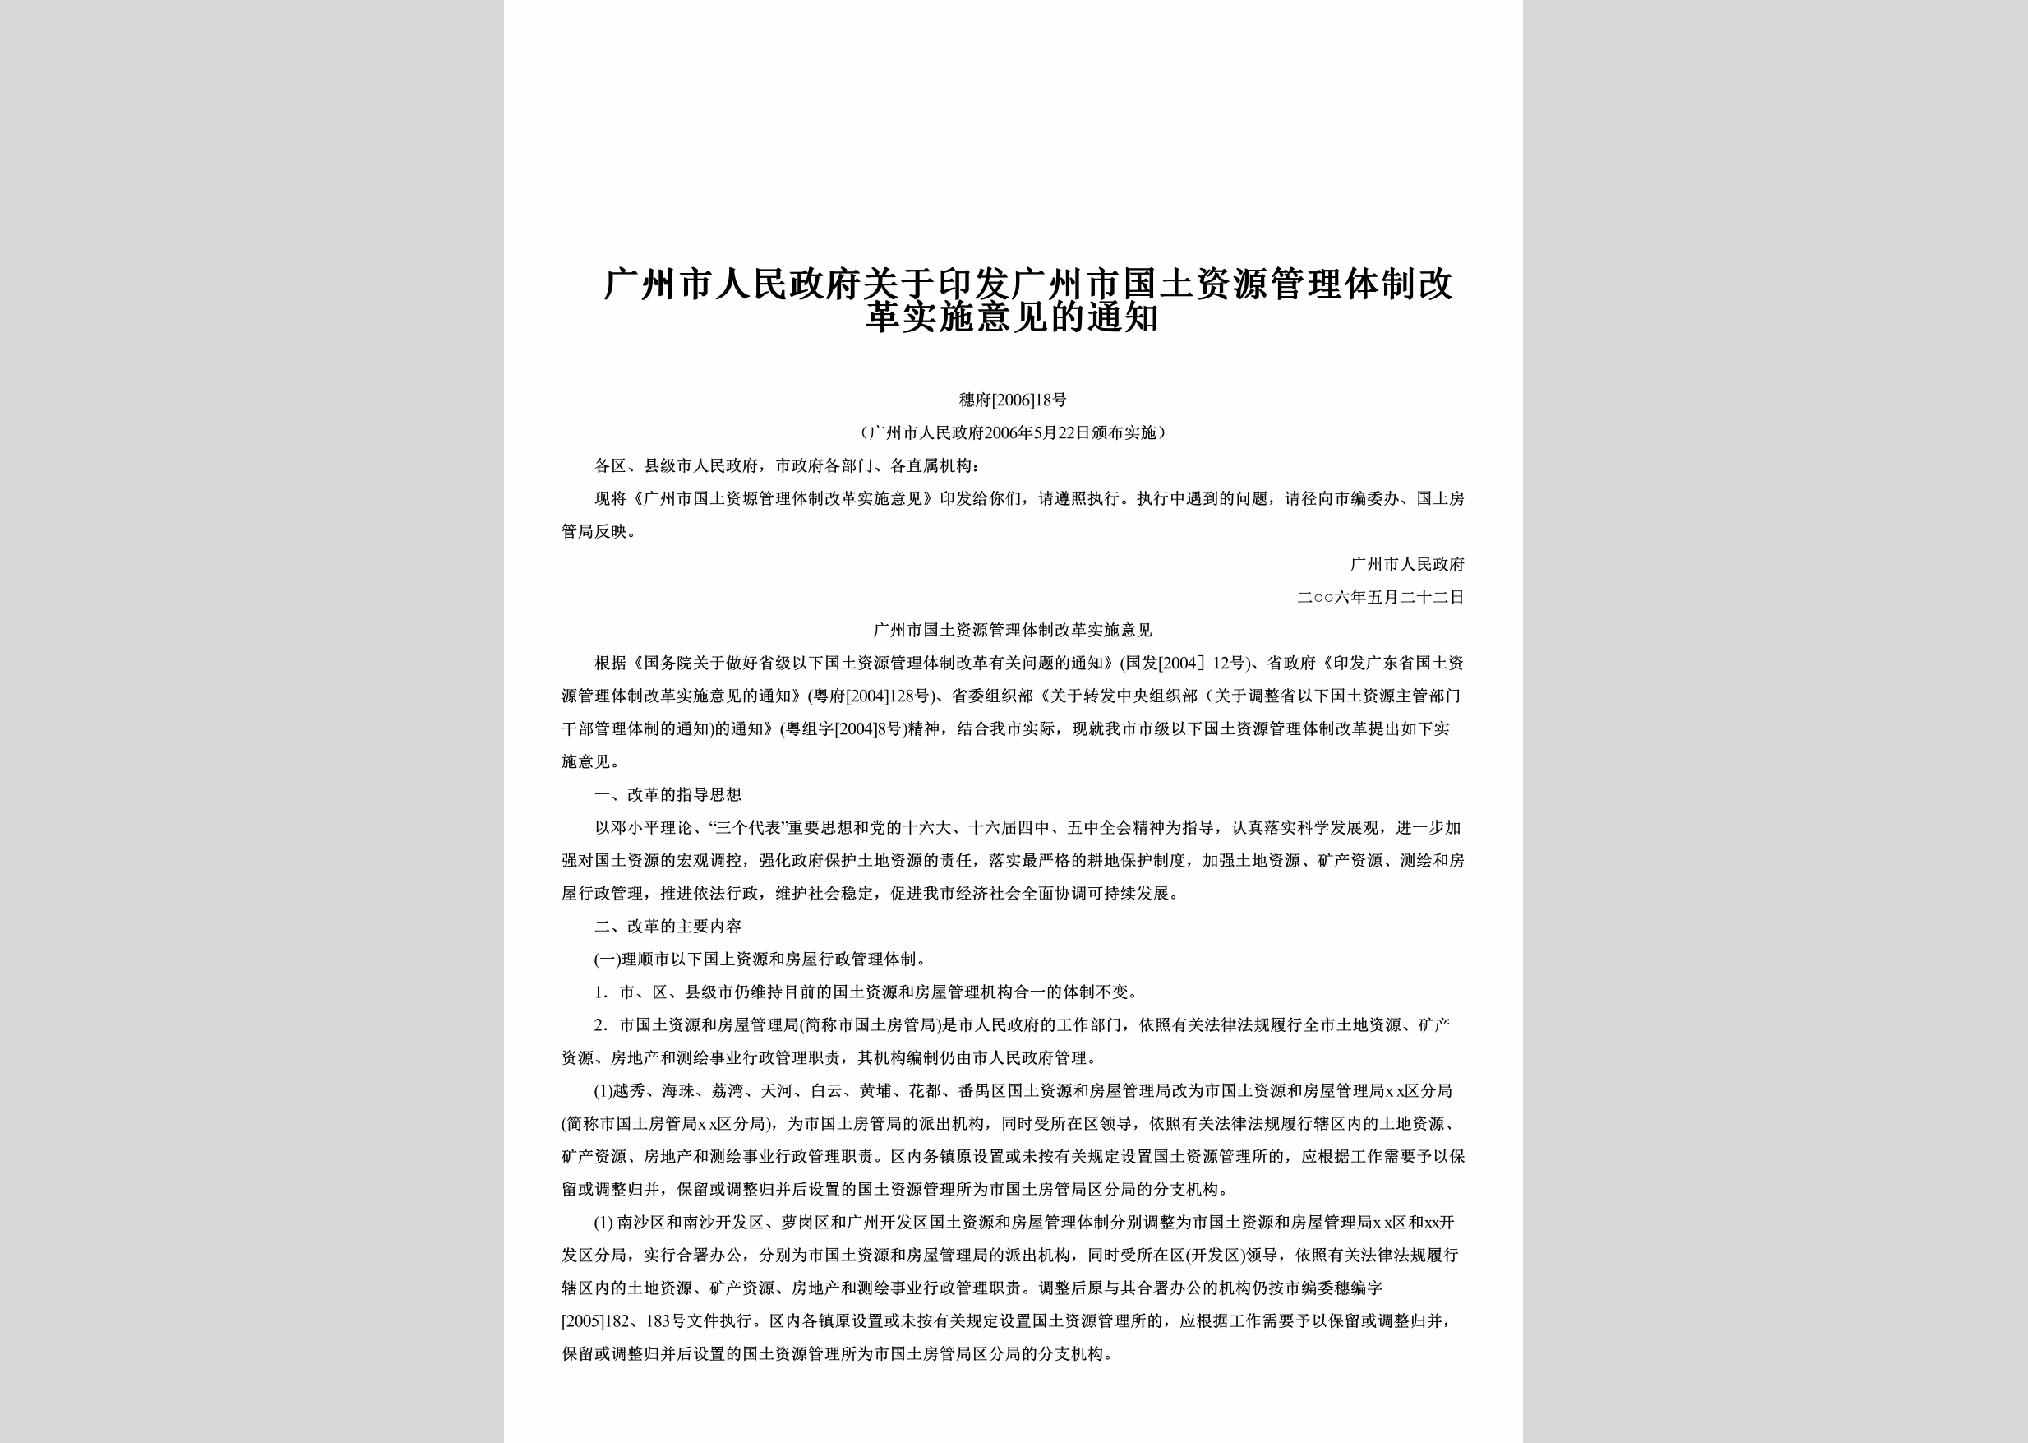 穗府[2006]18号：关于印发广州市国土资源管理体制改革实施意见的通知